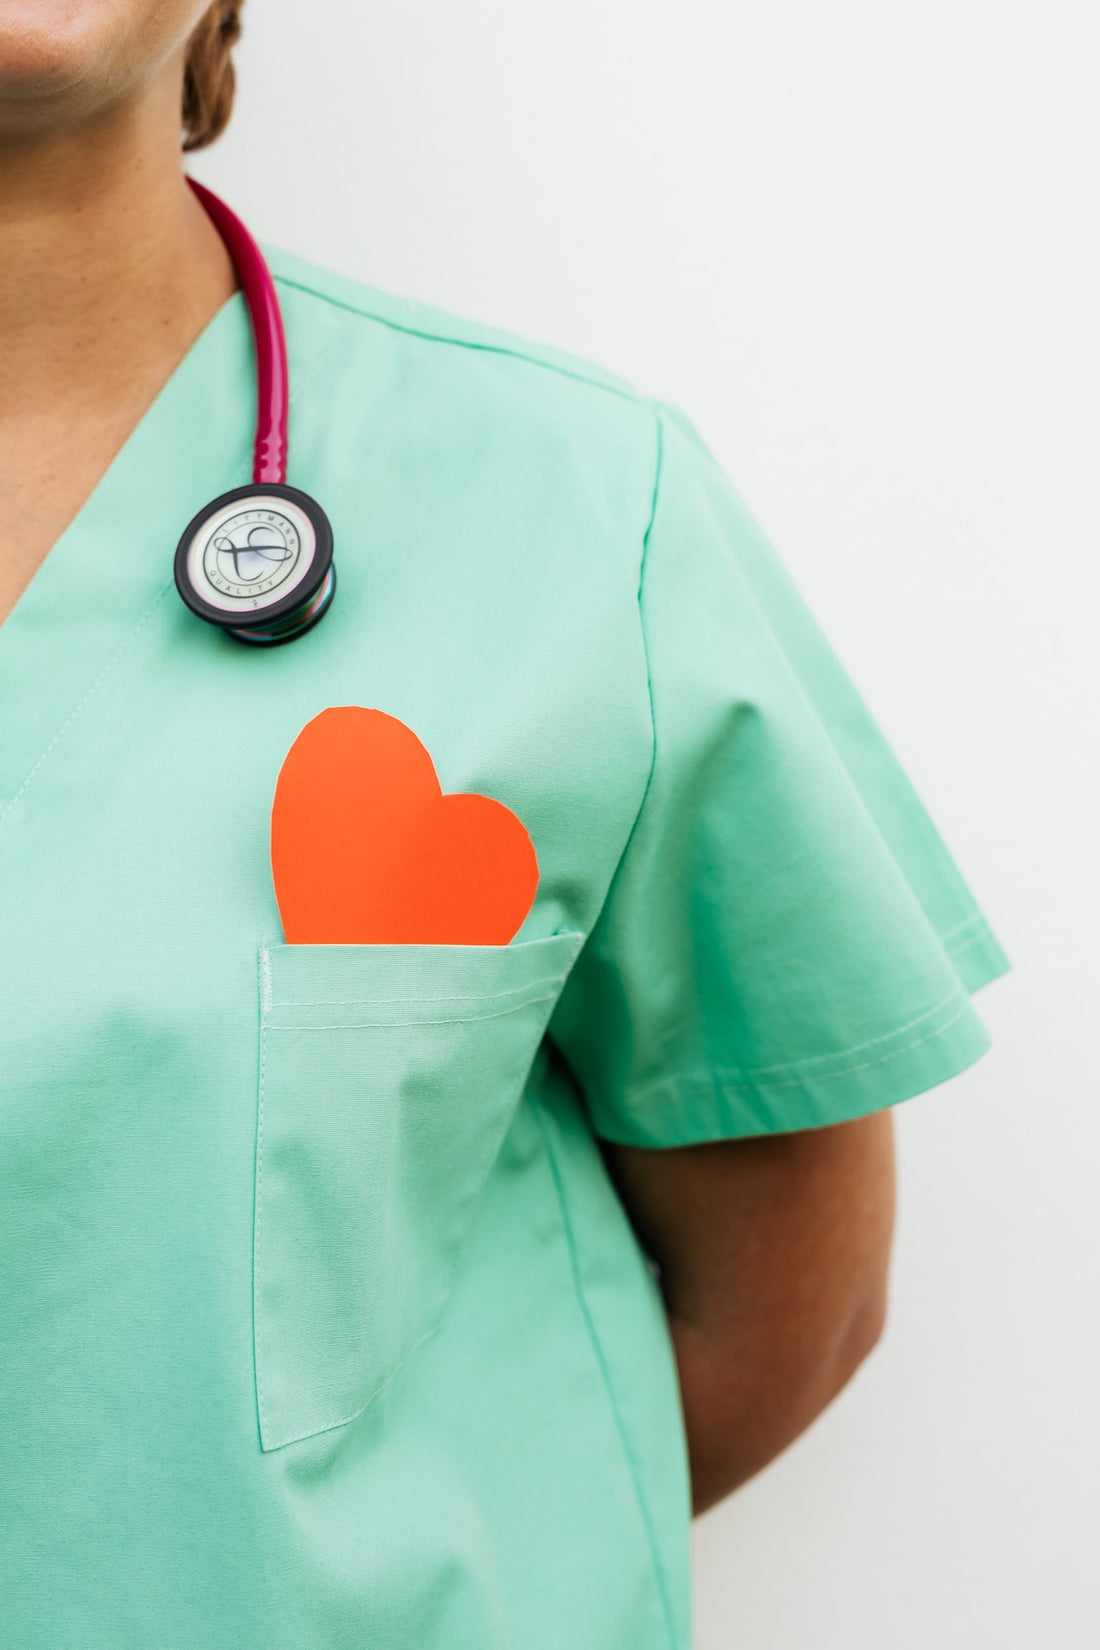 Être infirmière : vocation ou choix de carrière ?